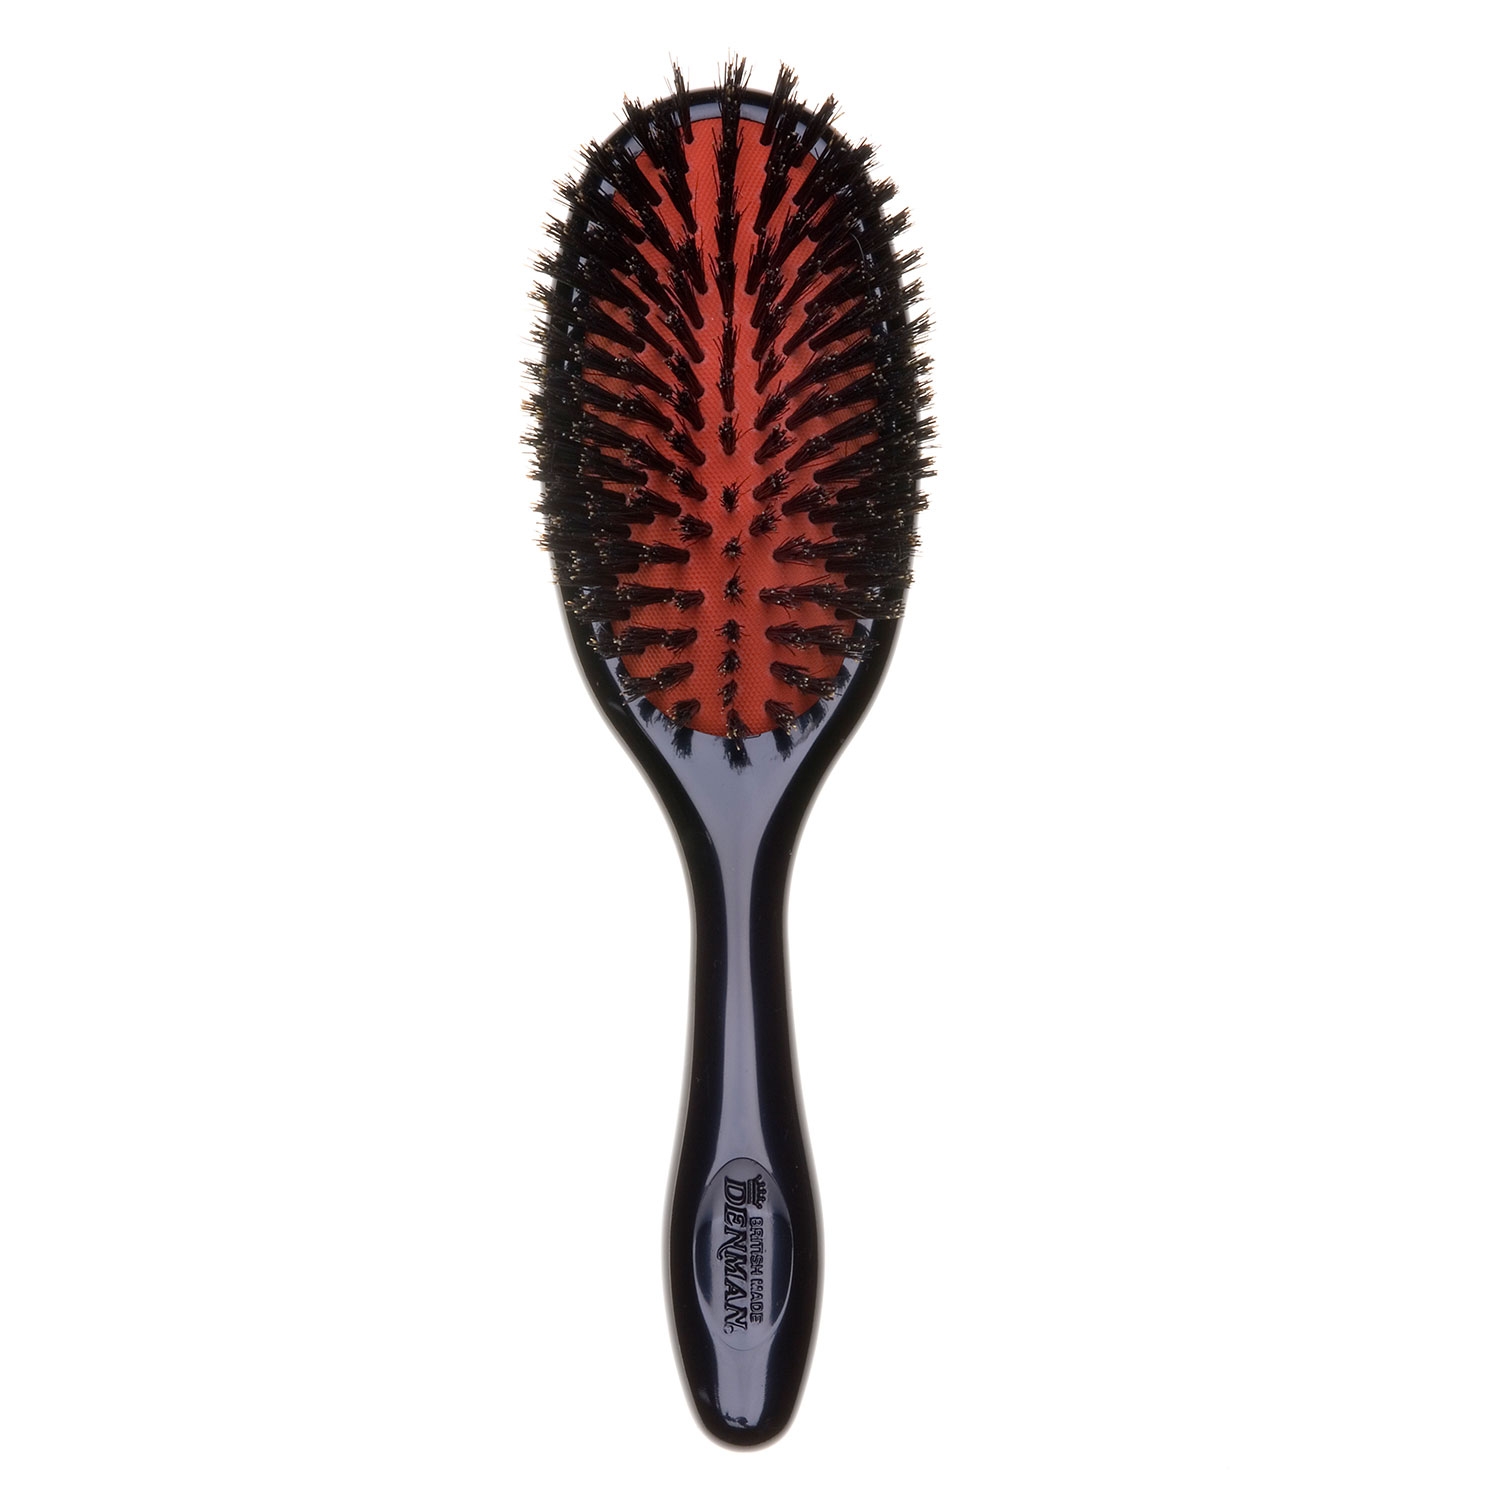 Produktbild von Denman - Boar Bristle Brush medium